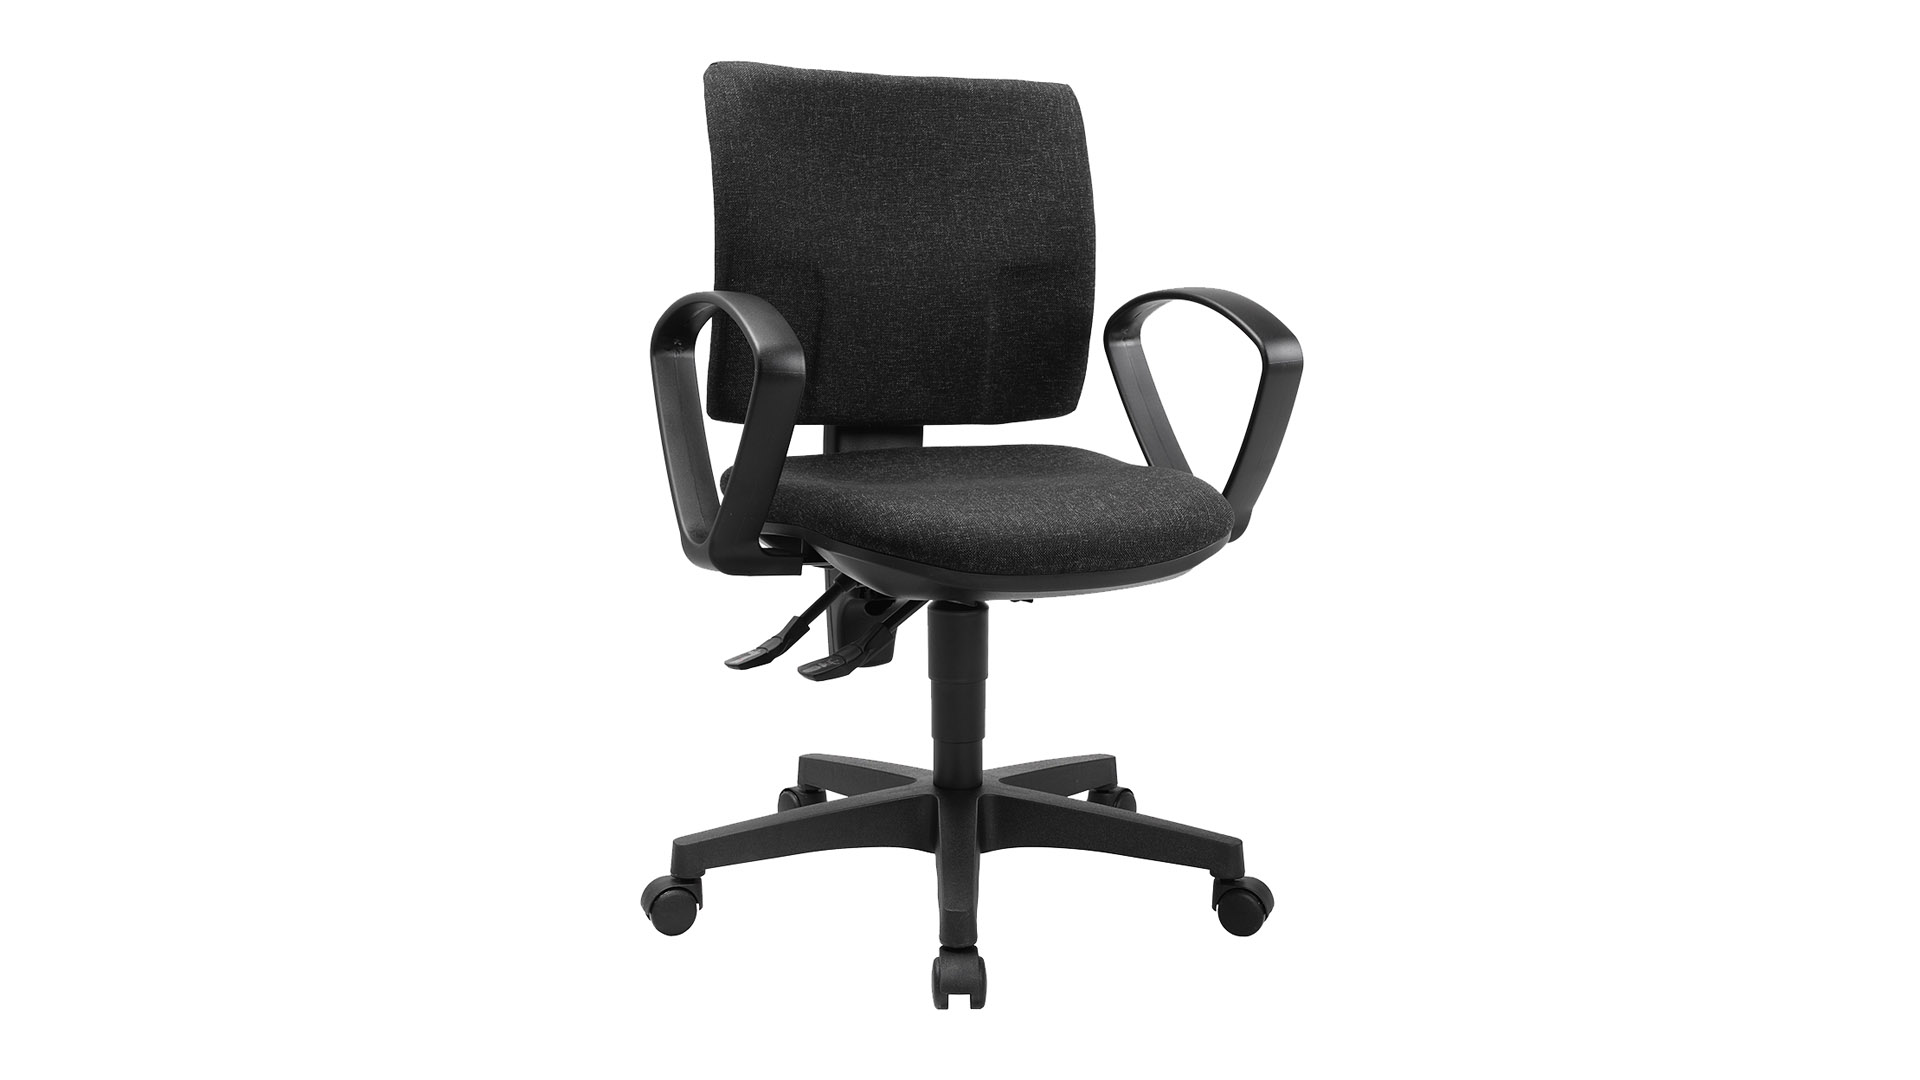 Bürodrehstuhl, Sitz-BxTxH 460x450x420-550 mm, Lehnenh. 460 mm, Permanentk., Bandscheibensitz, anthrazit